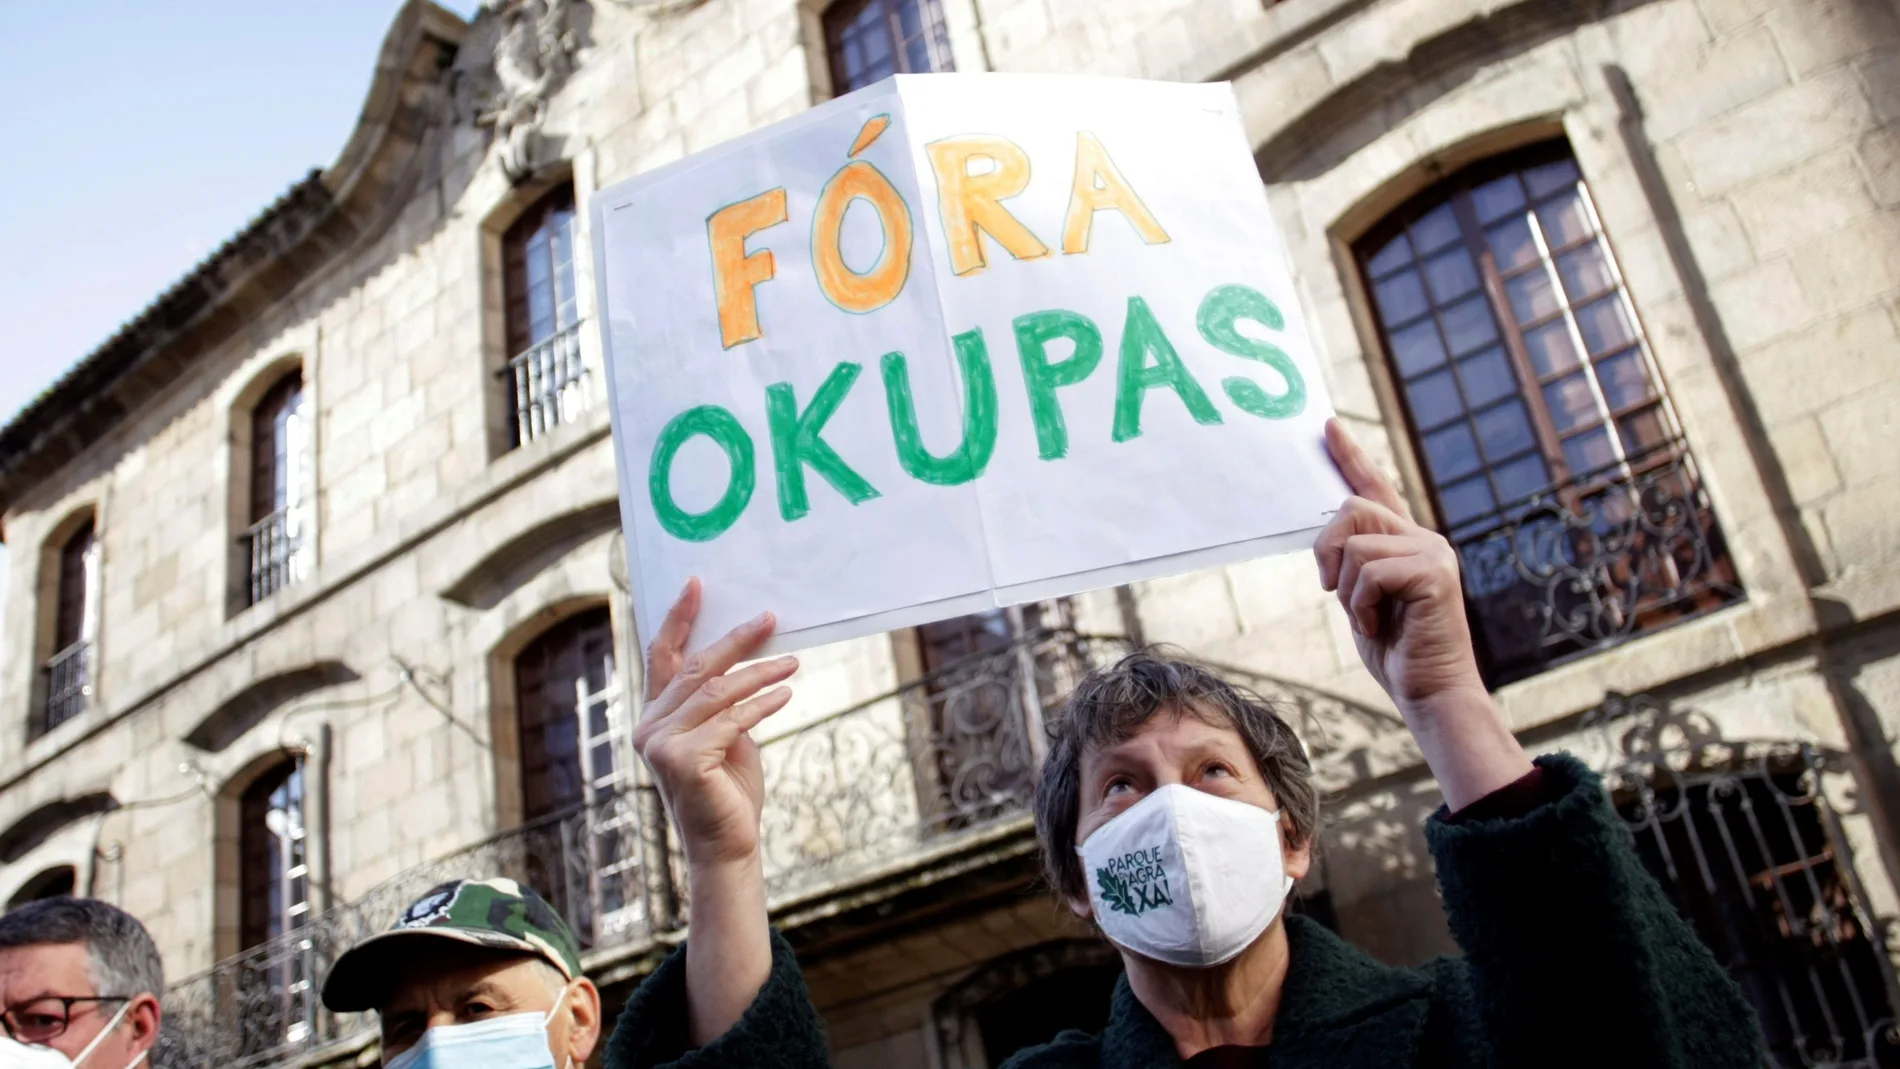 Una mujer sostiene una cartel con la frase "fuera okupas"